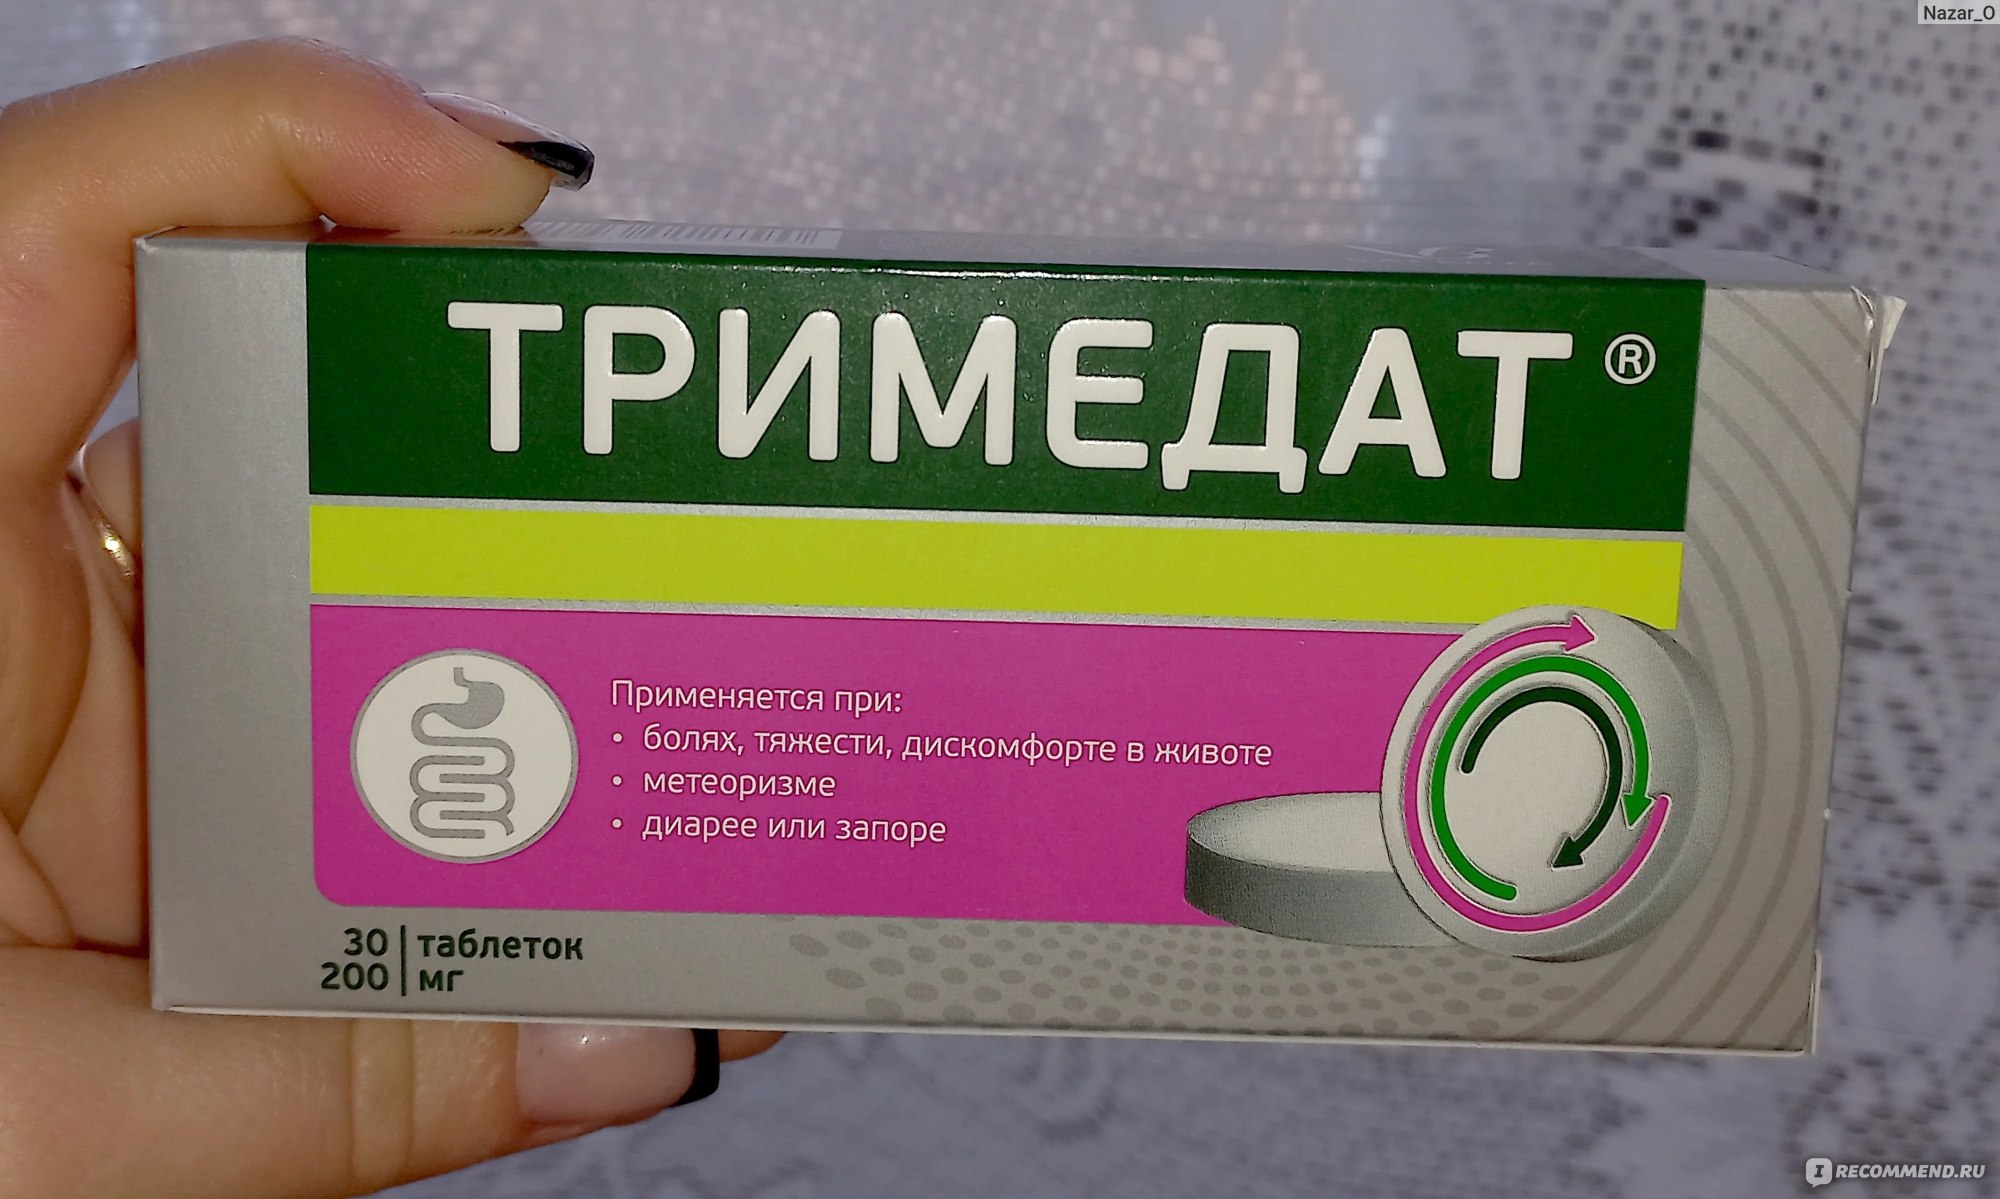 Яндекс от тяжести и вздутия какое лекарство пить